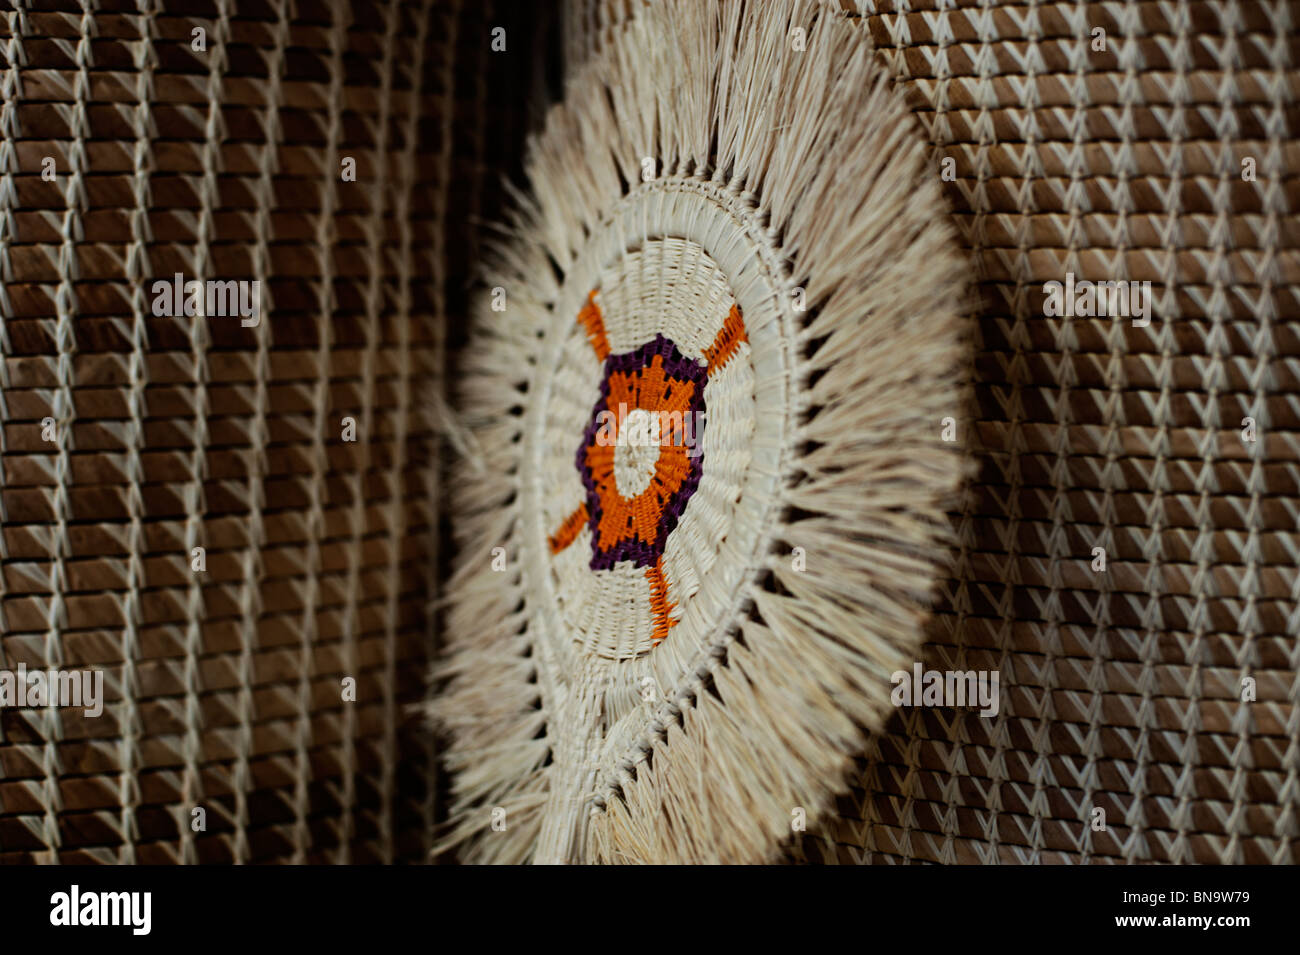 Un ventilador tradicional, tejida a partir de fibras naturales, descansa contra dos cestas en una tienda de artesanía en las Islas Marshall. Foto de stock